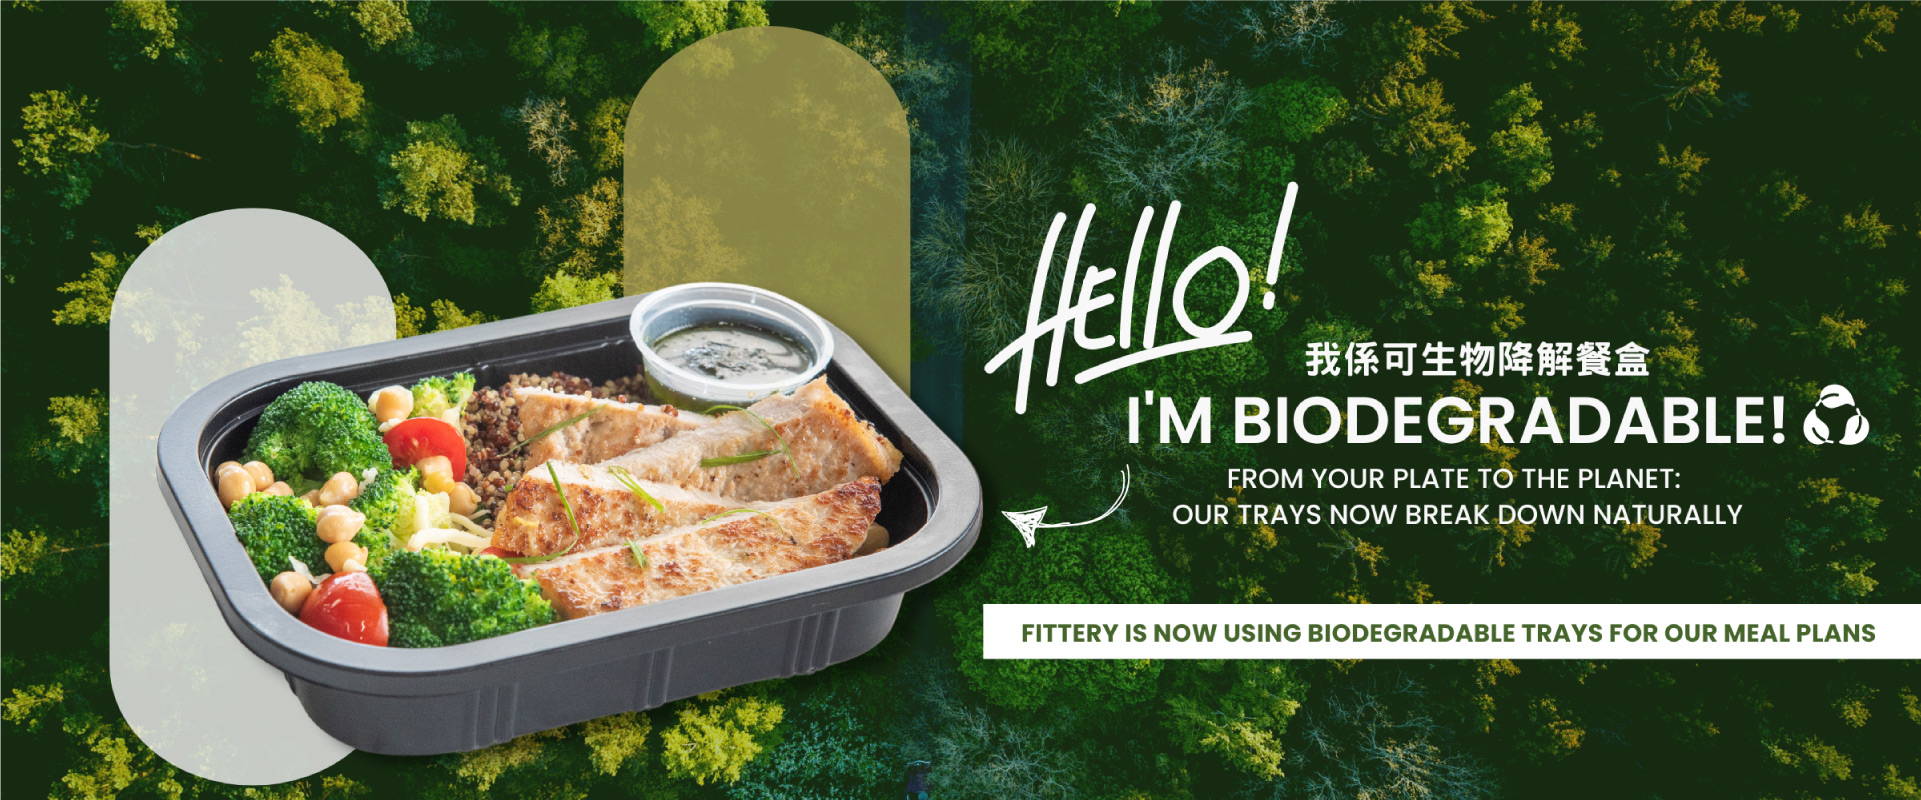 FITTERY 現在在我們的膳食計劃中使用可生物降解的托盤